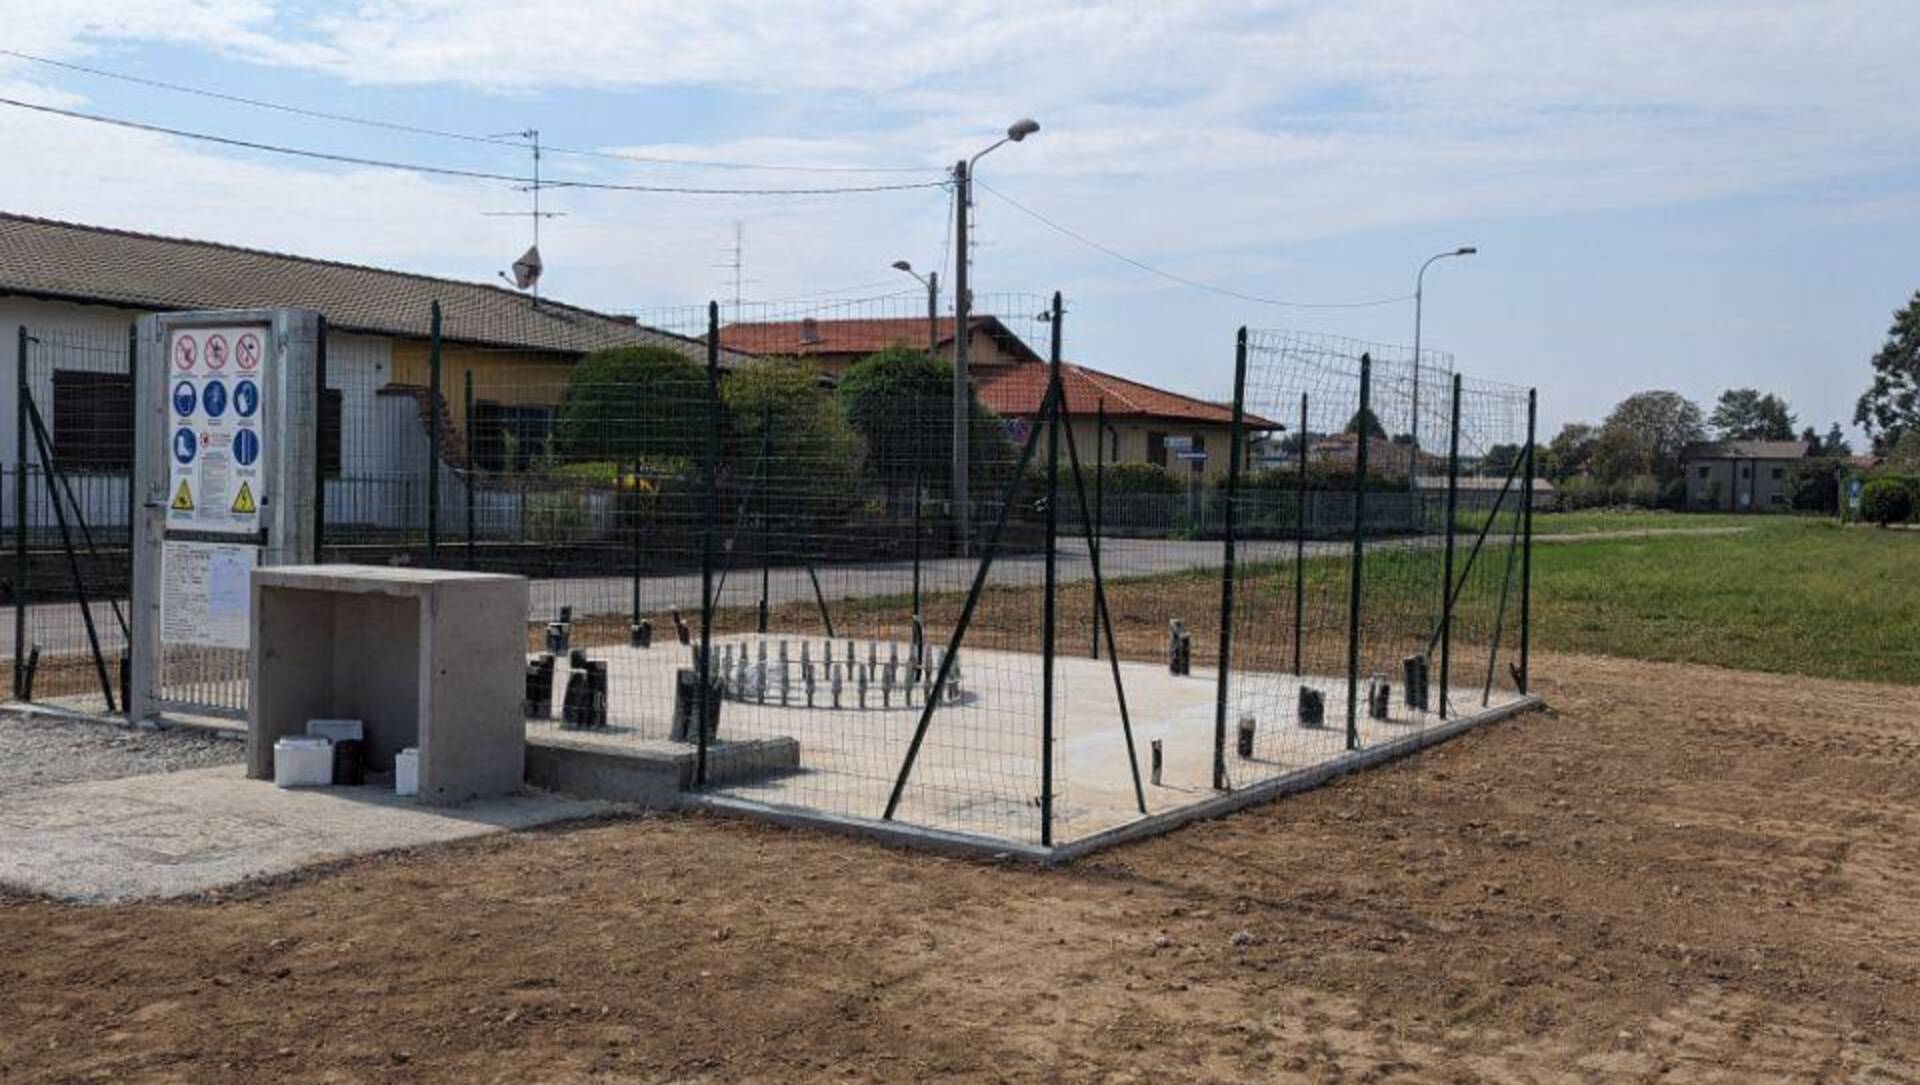 Saronno, nuova stazione radio base (antenna telefonia) al confine con Ceriano: l’iter, l’intervento e la normativa